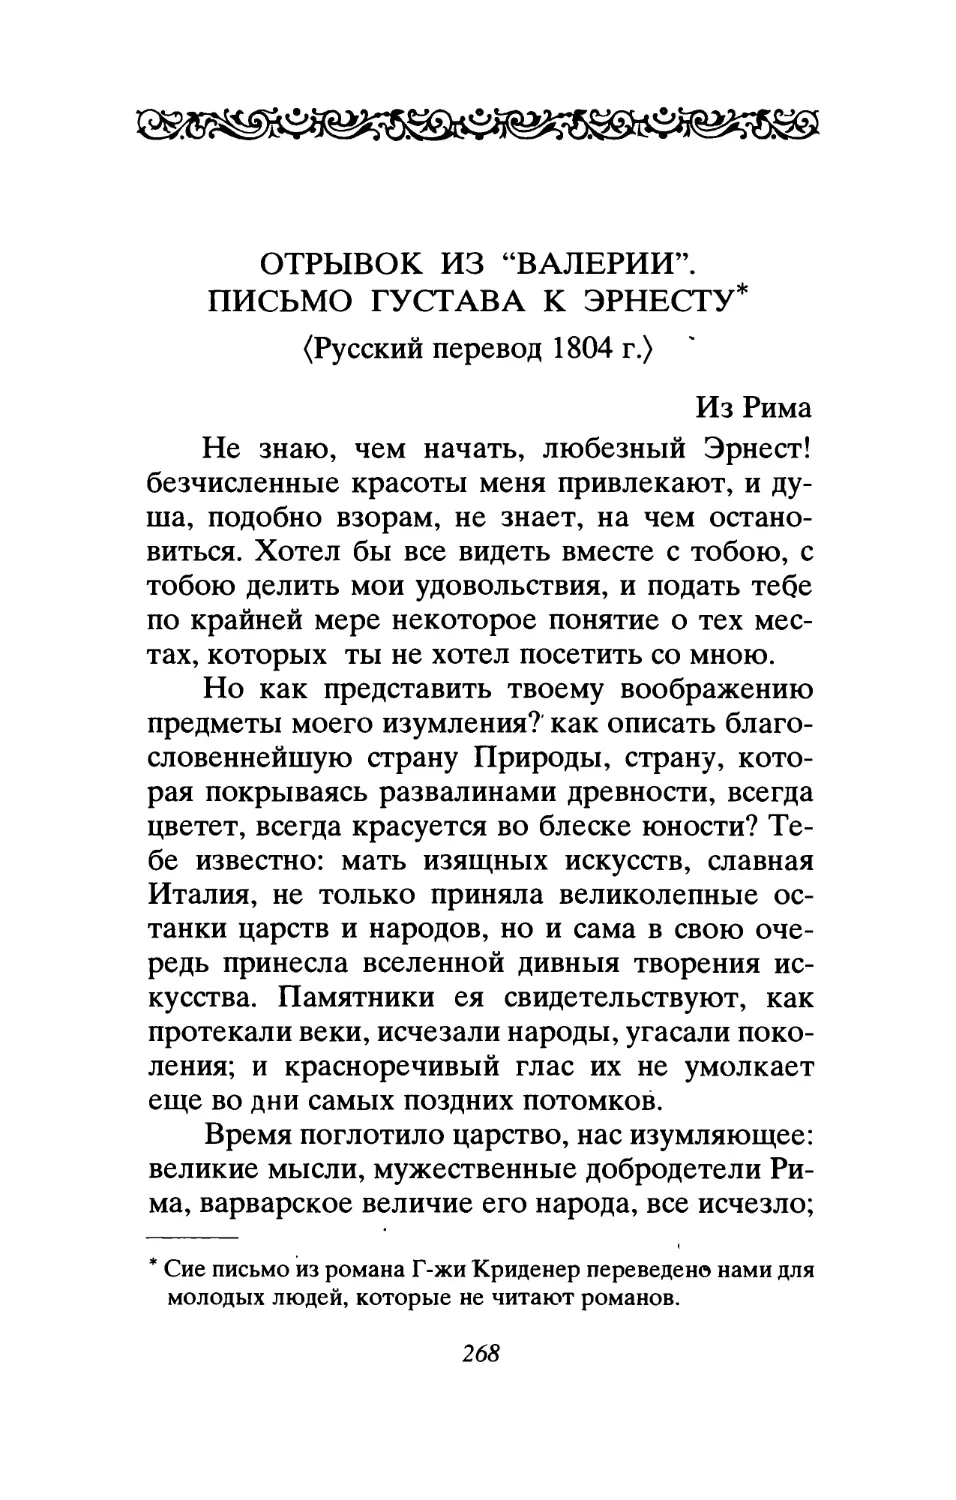 Отрывок из «Валерии». Письмо Густава к Эрнесту. <Русский перевод 1804 г.>